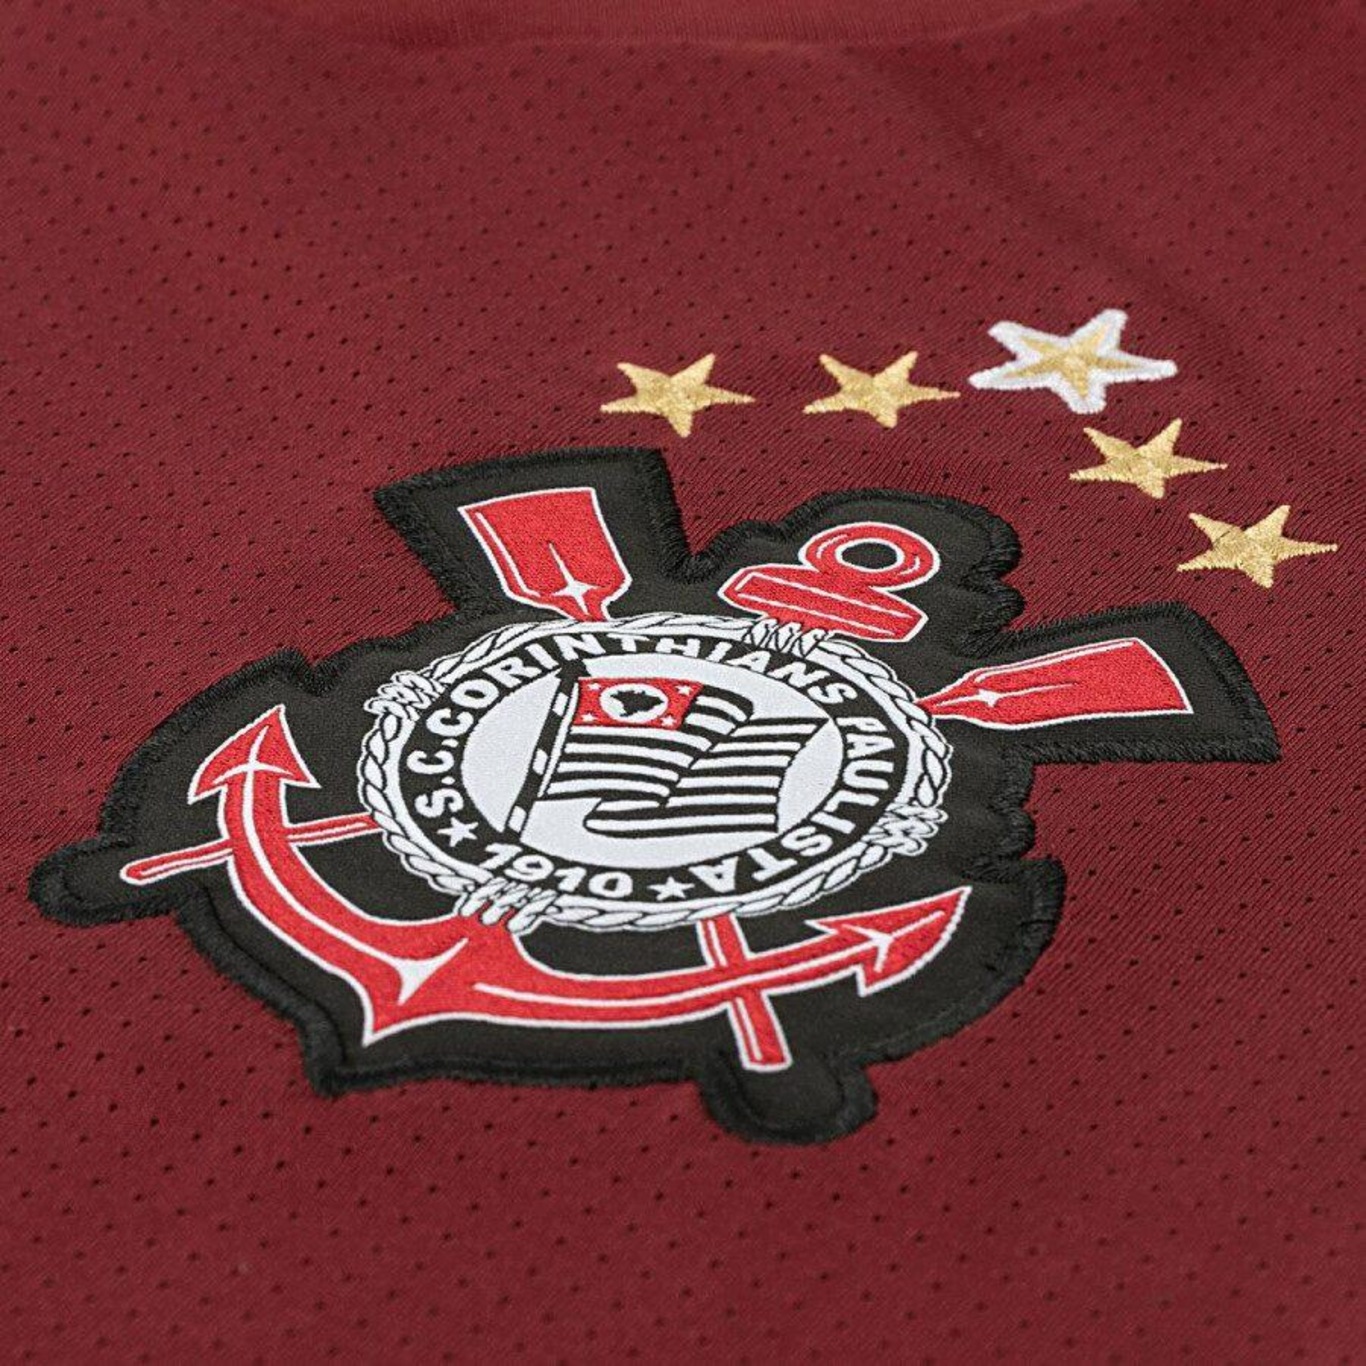 Camiseta Corinthians Réplica 2011 Grena Masculina - Vinho - Gg :  : Esporte